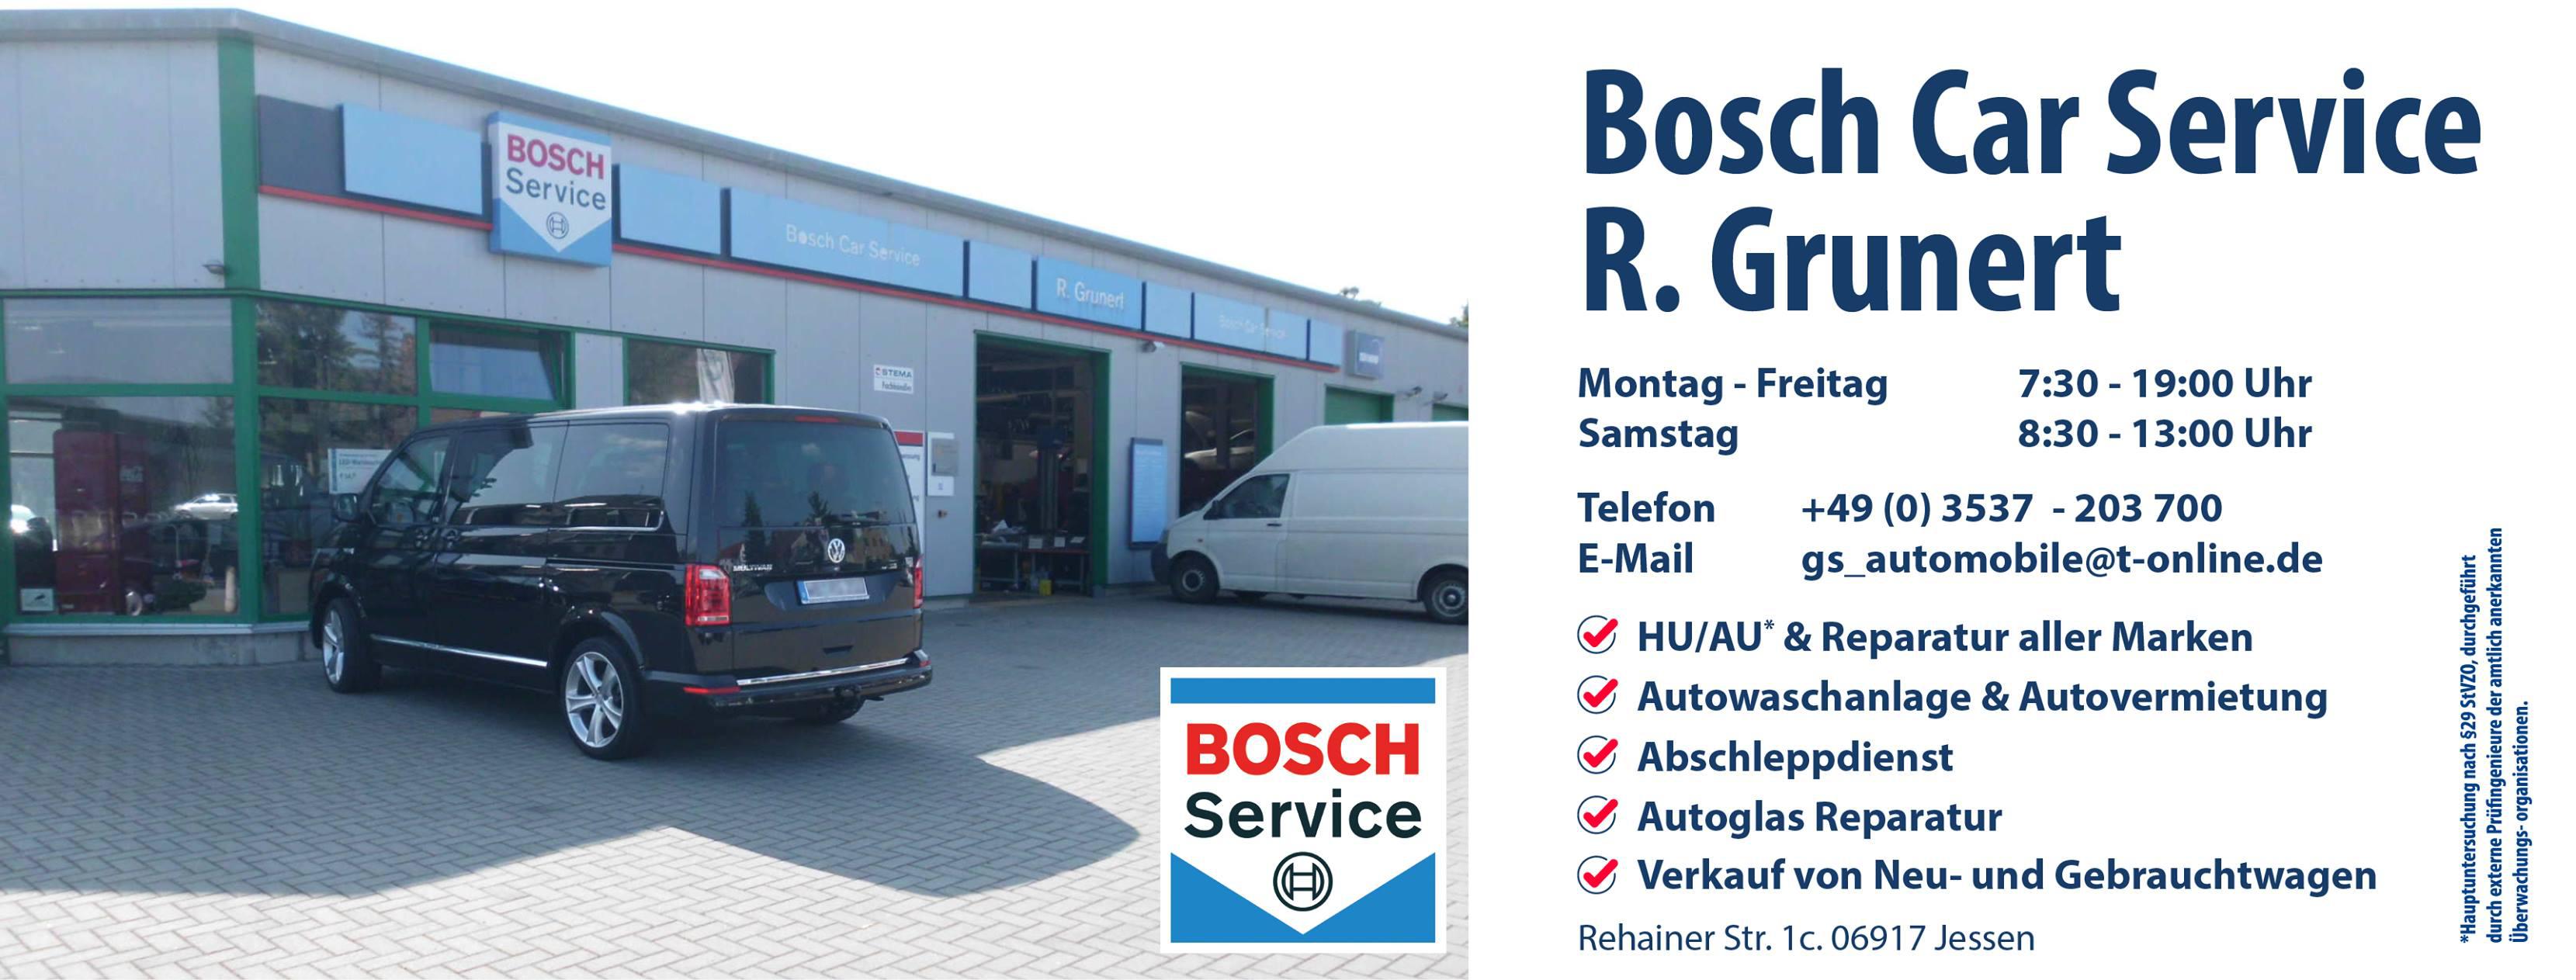 Bild der R. Grunert Bosch-Car-Service